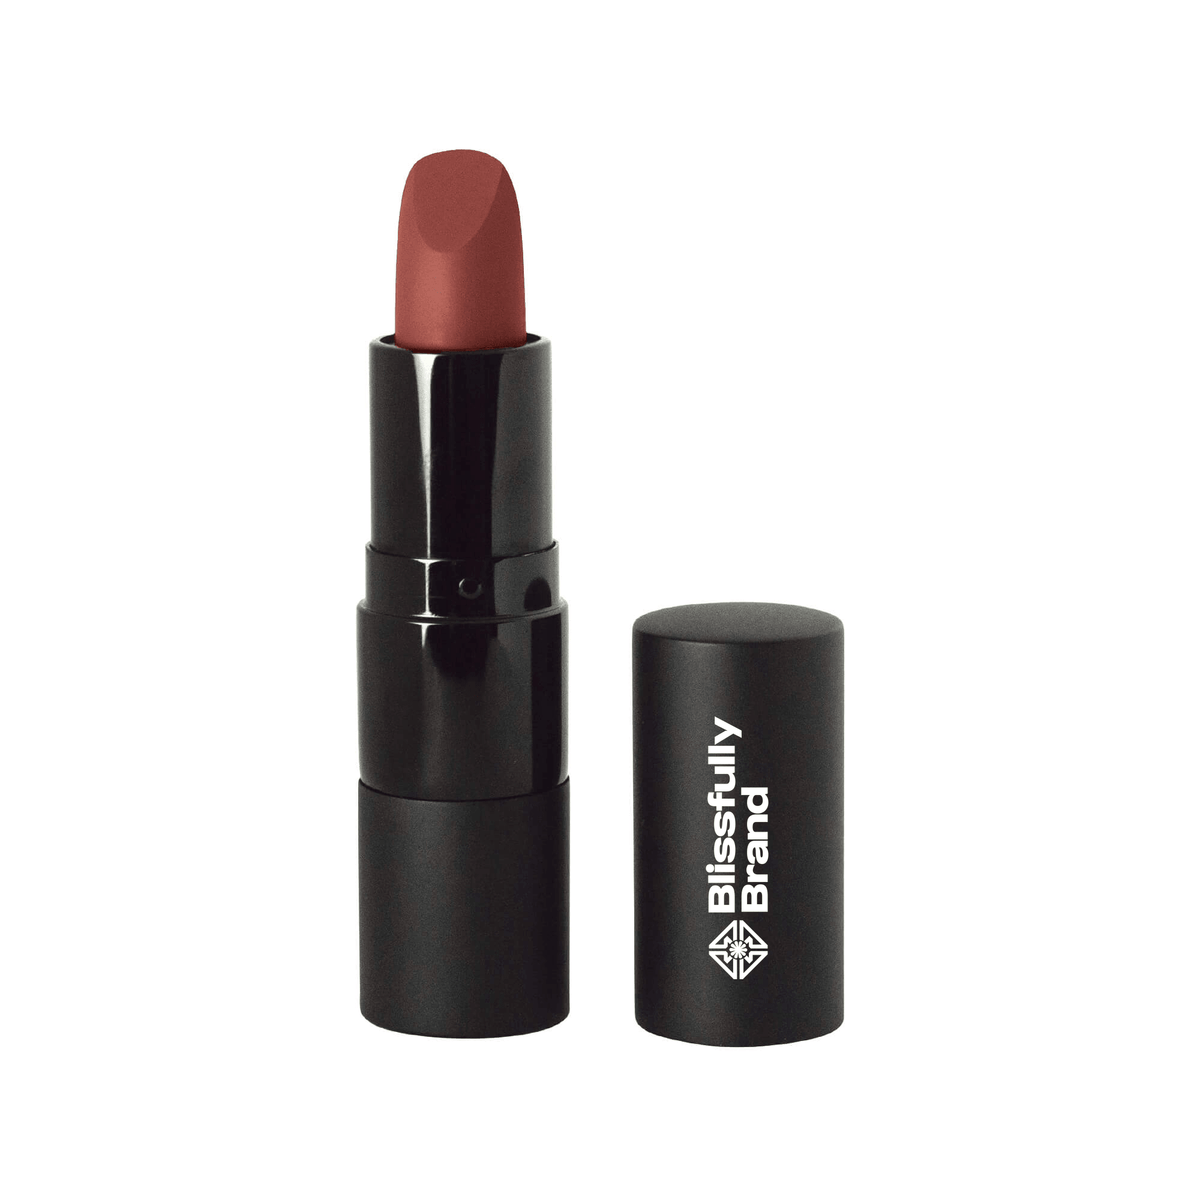 Matte Lipstick - Lust Red - Vitamin E - Silky & Velvety | Vegan